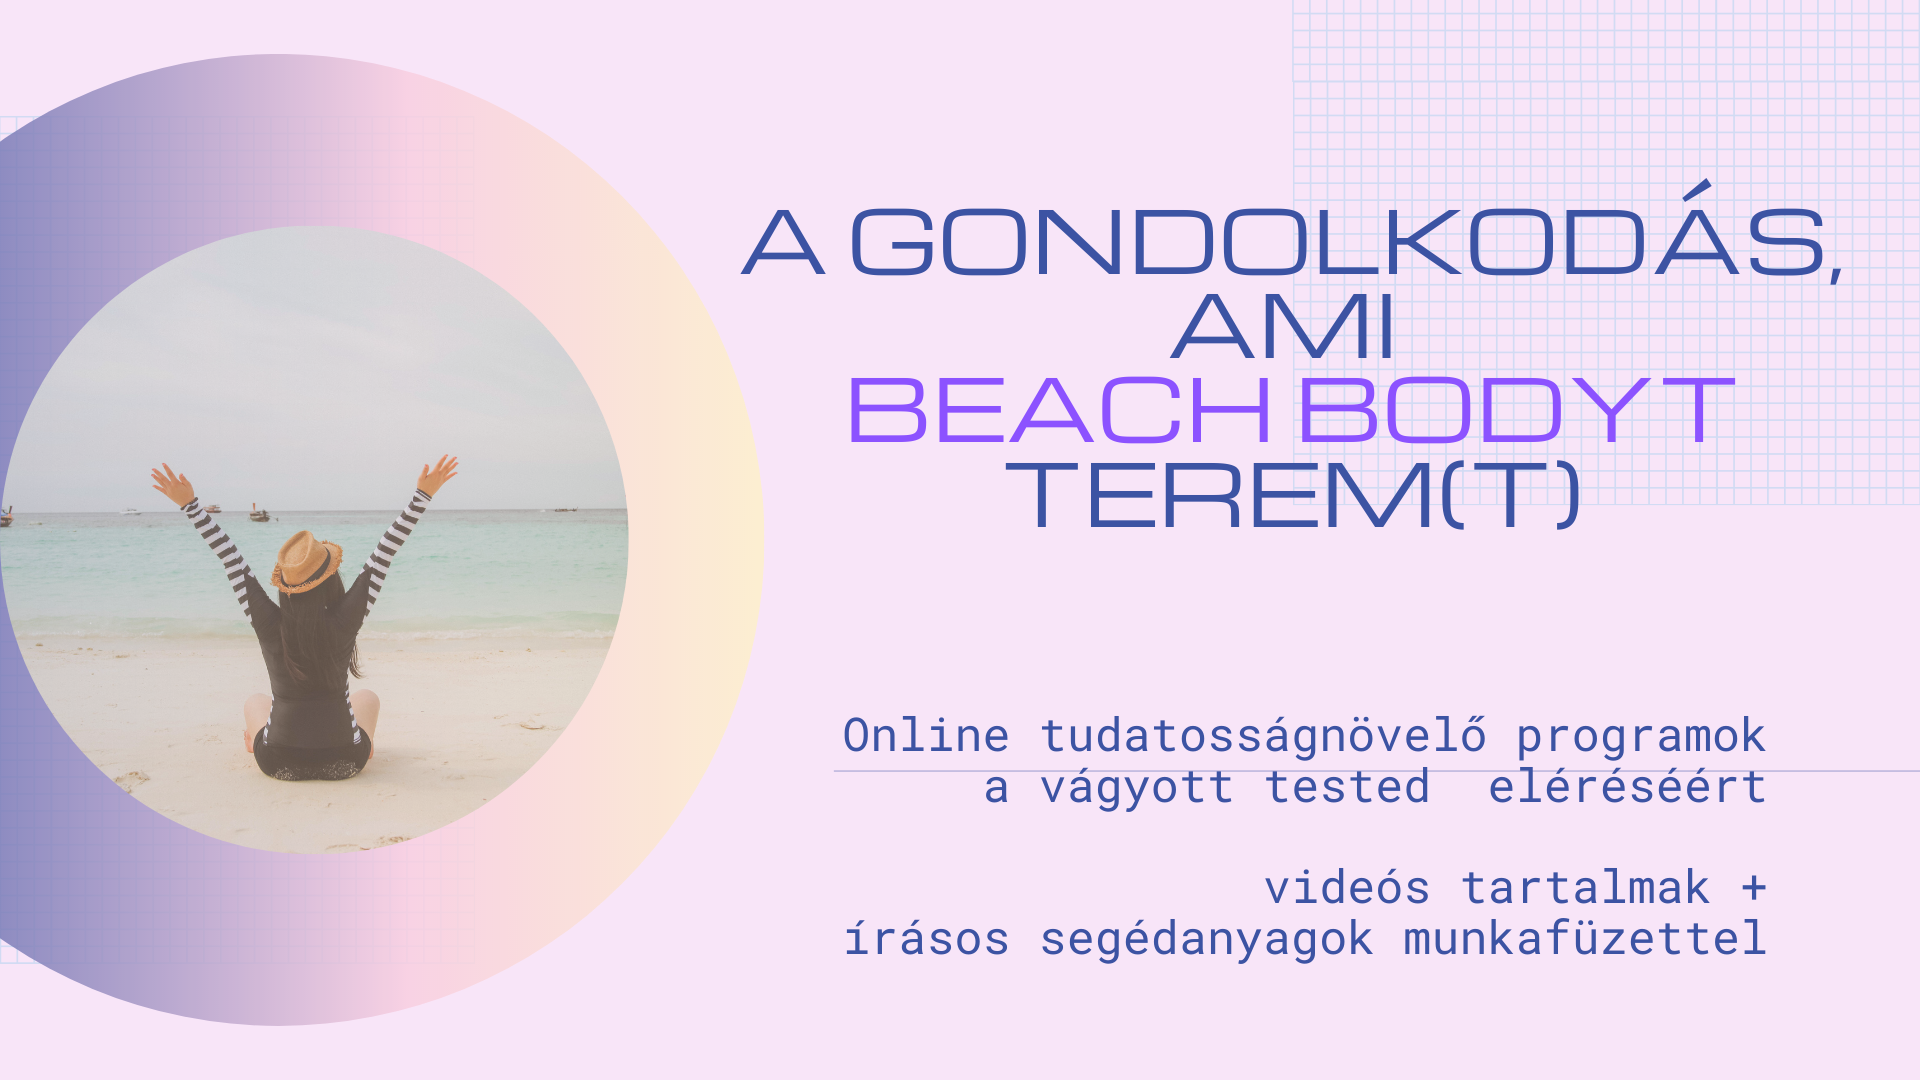 a_gondolkodas_ami_beach_bodyt_terem_t_prg-krol_posztkep.png